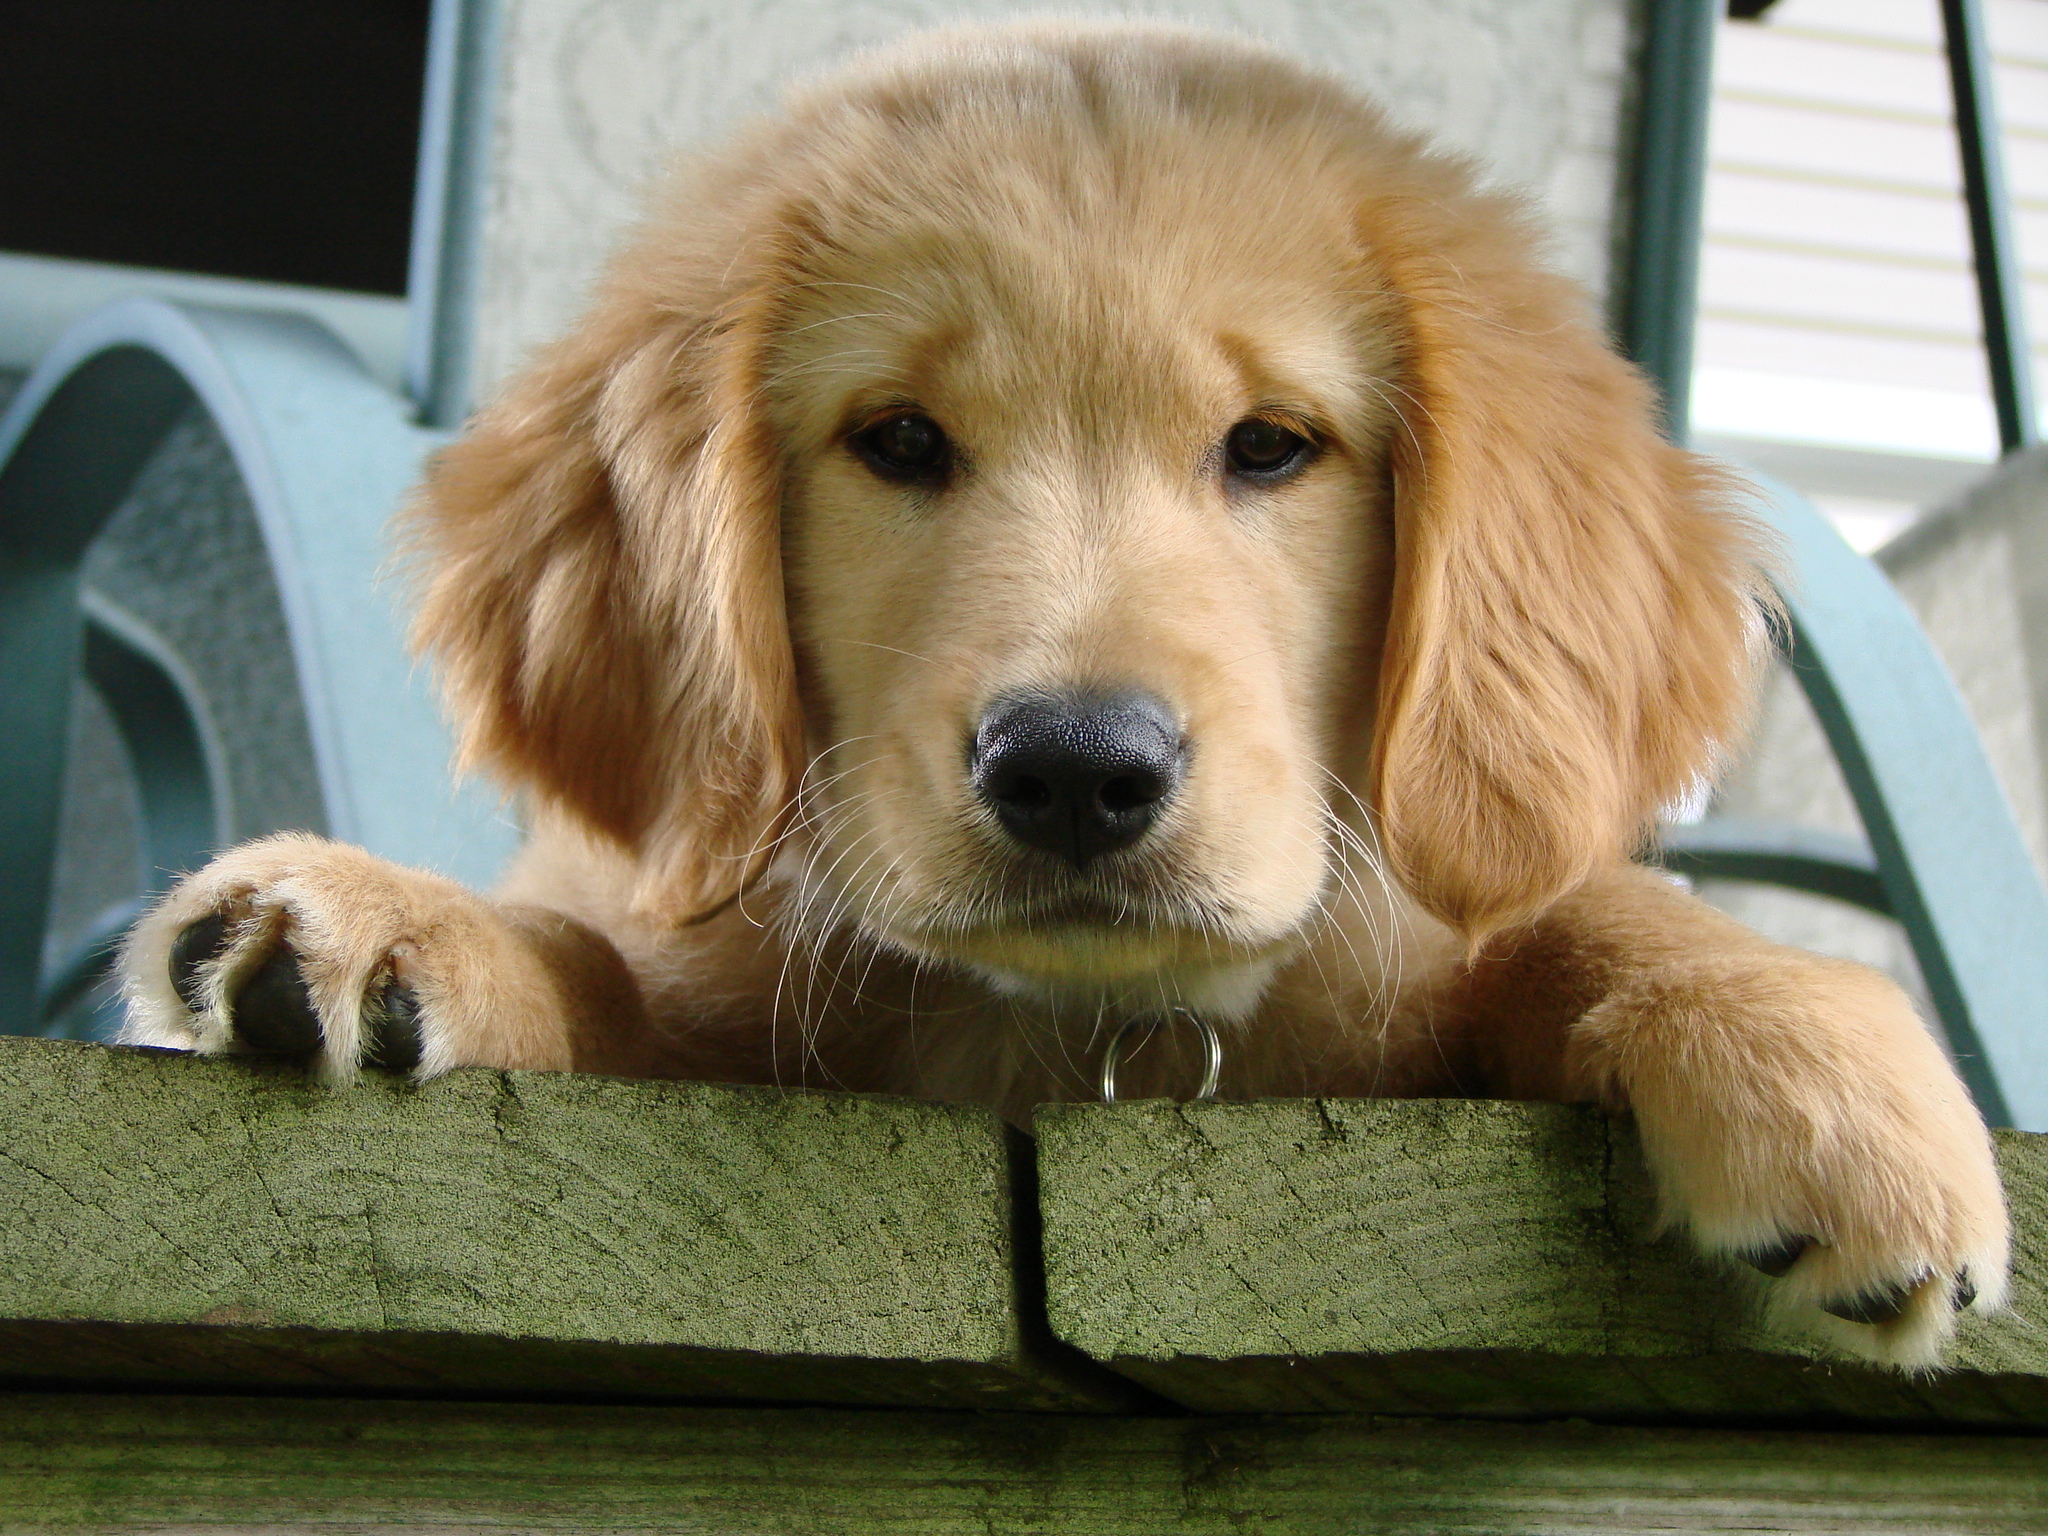 Hình ảnh chó Golden - Tổng hợp hình ảnh chó Golden đẹp nhất